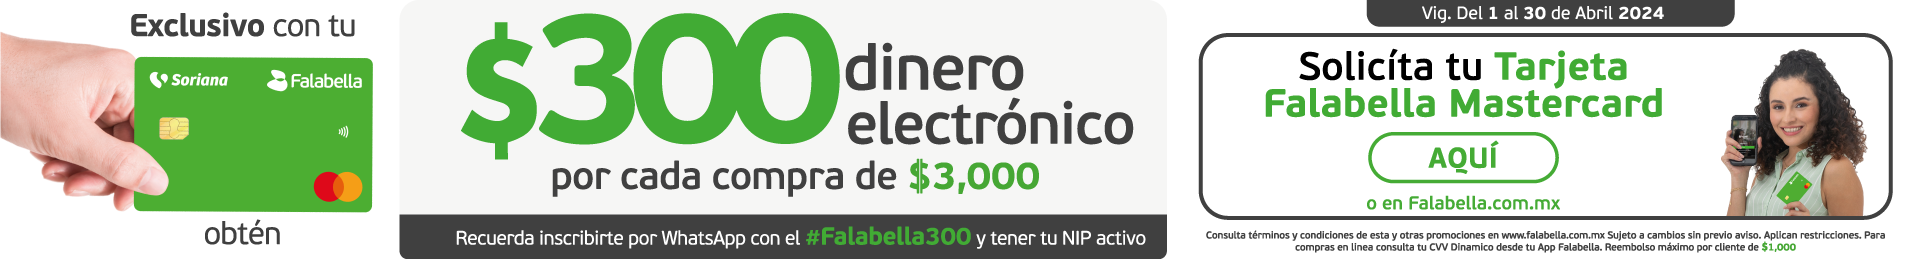 $300 dinero electrónico por cada $3,000 de compra con falabella